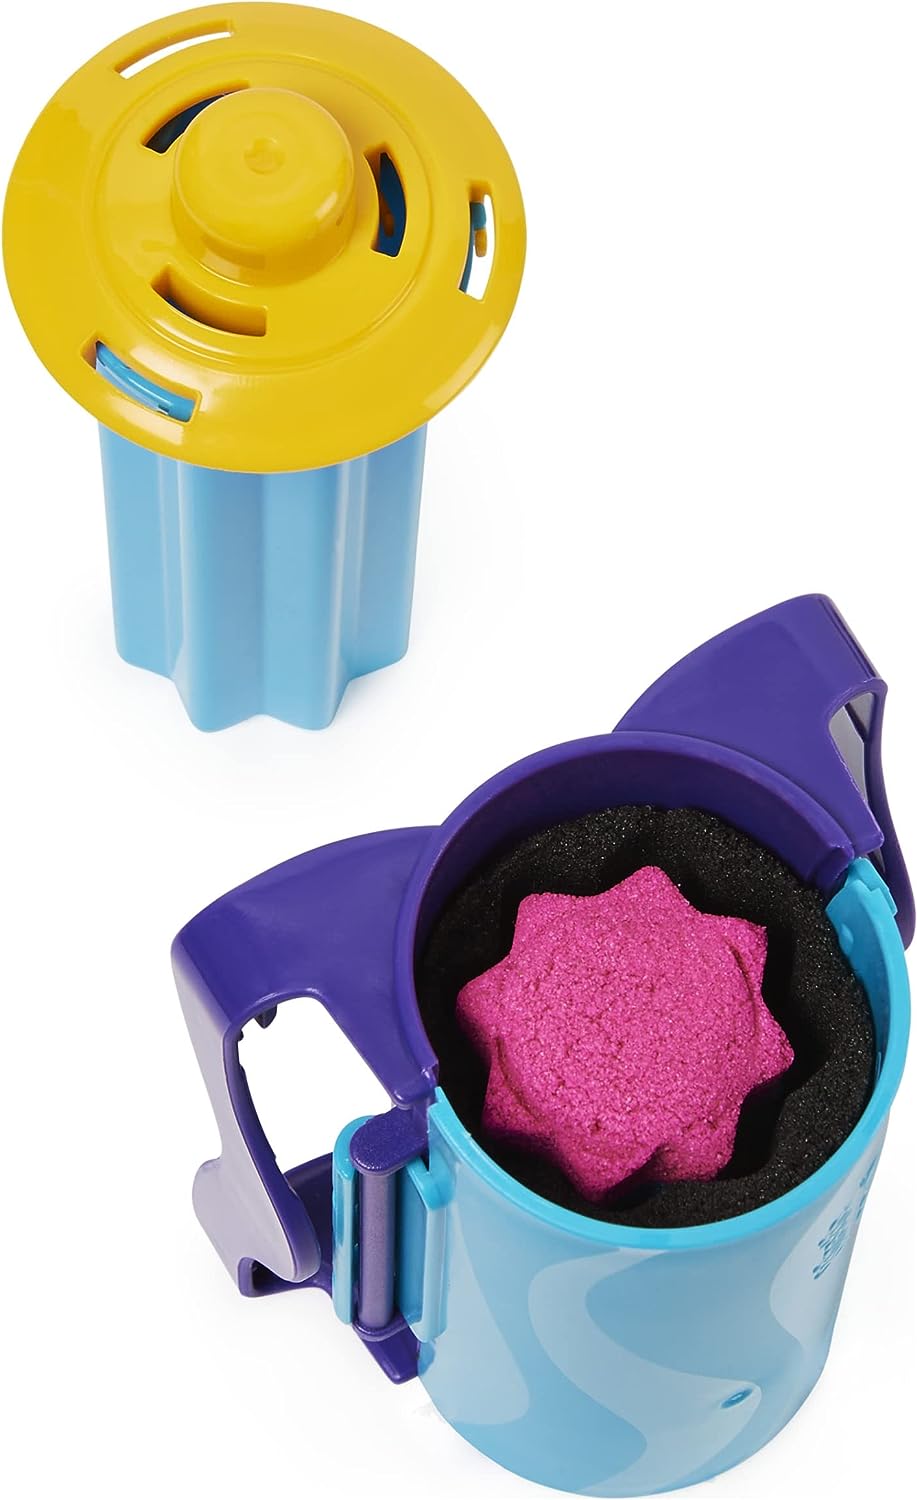 Kinetic Sand, Slice N' Surprise Set mit 383 g schwarzem, rosa und blauem Spielsand